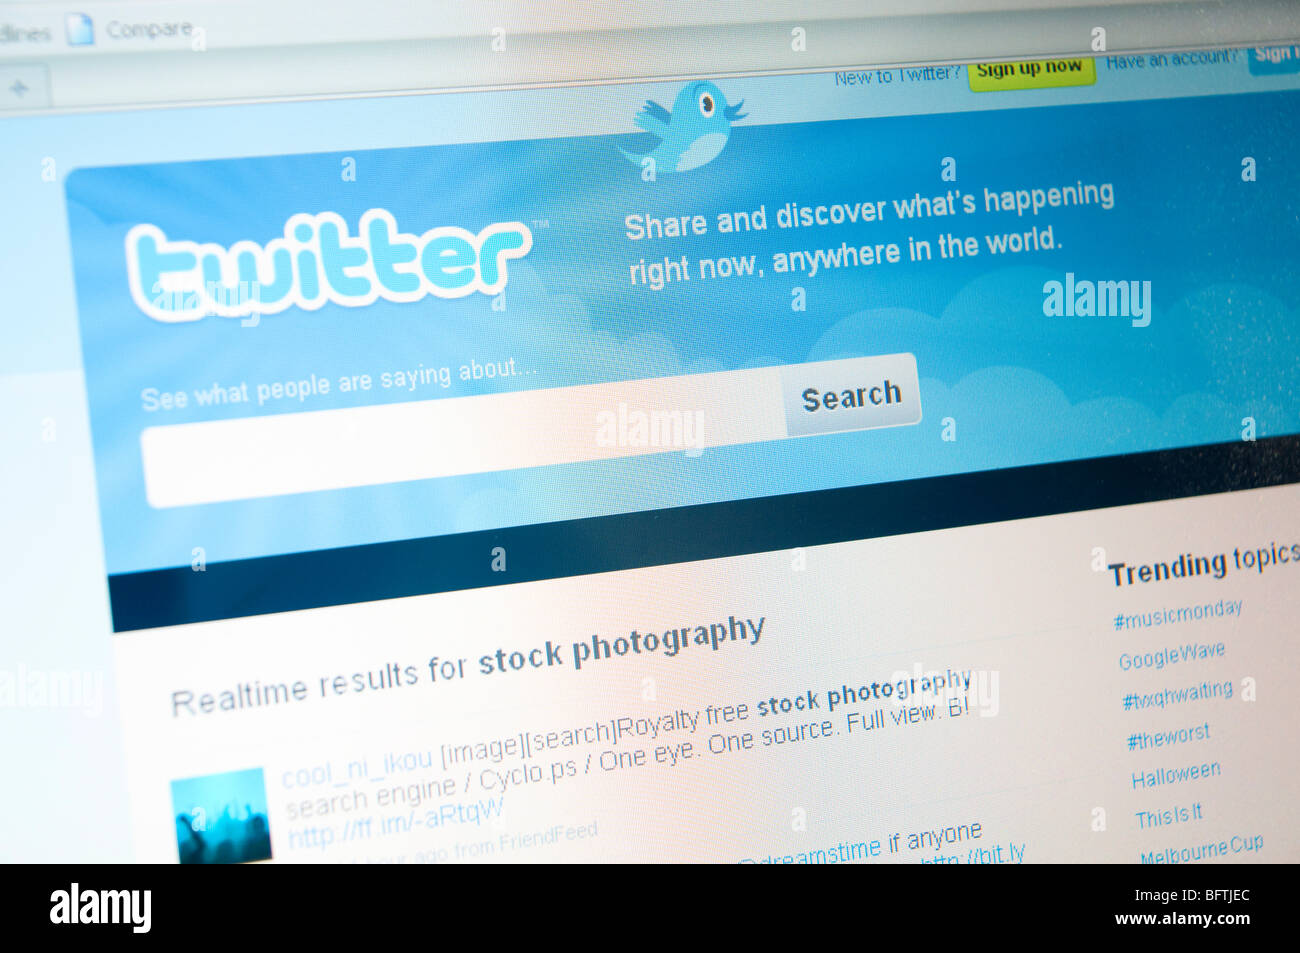 Ausschnitt einer Laptop Computer Bildschirm zeigt Hochtöner Website auf weißem Hintergrund Stockfoto